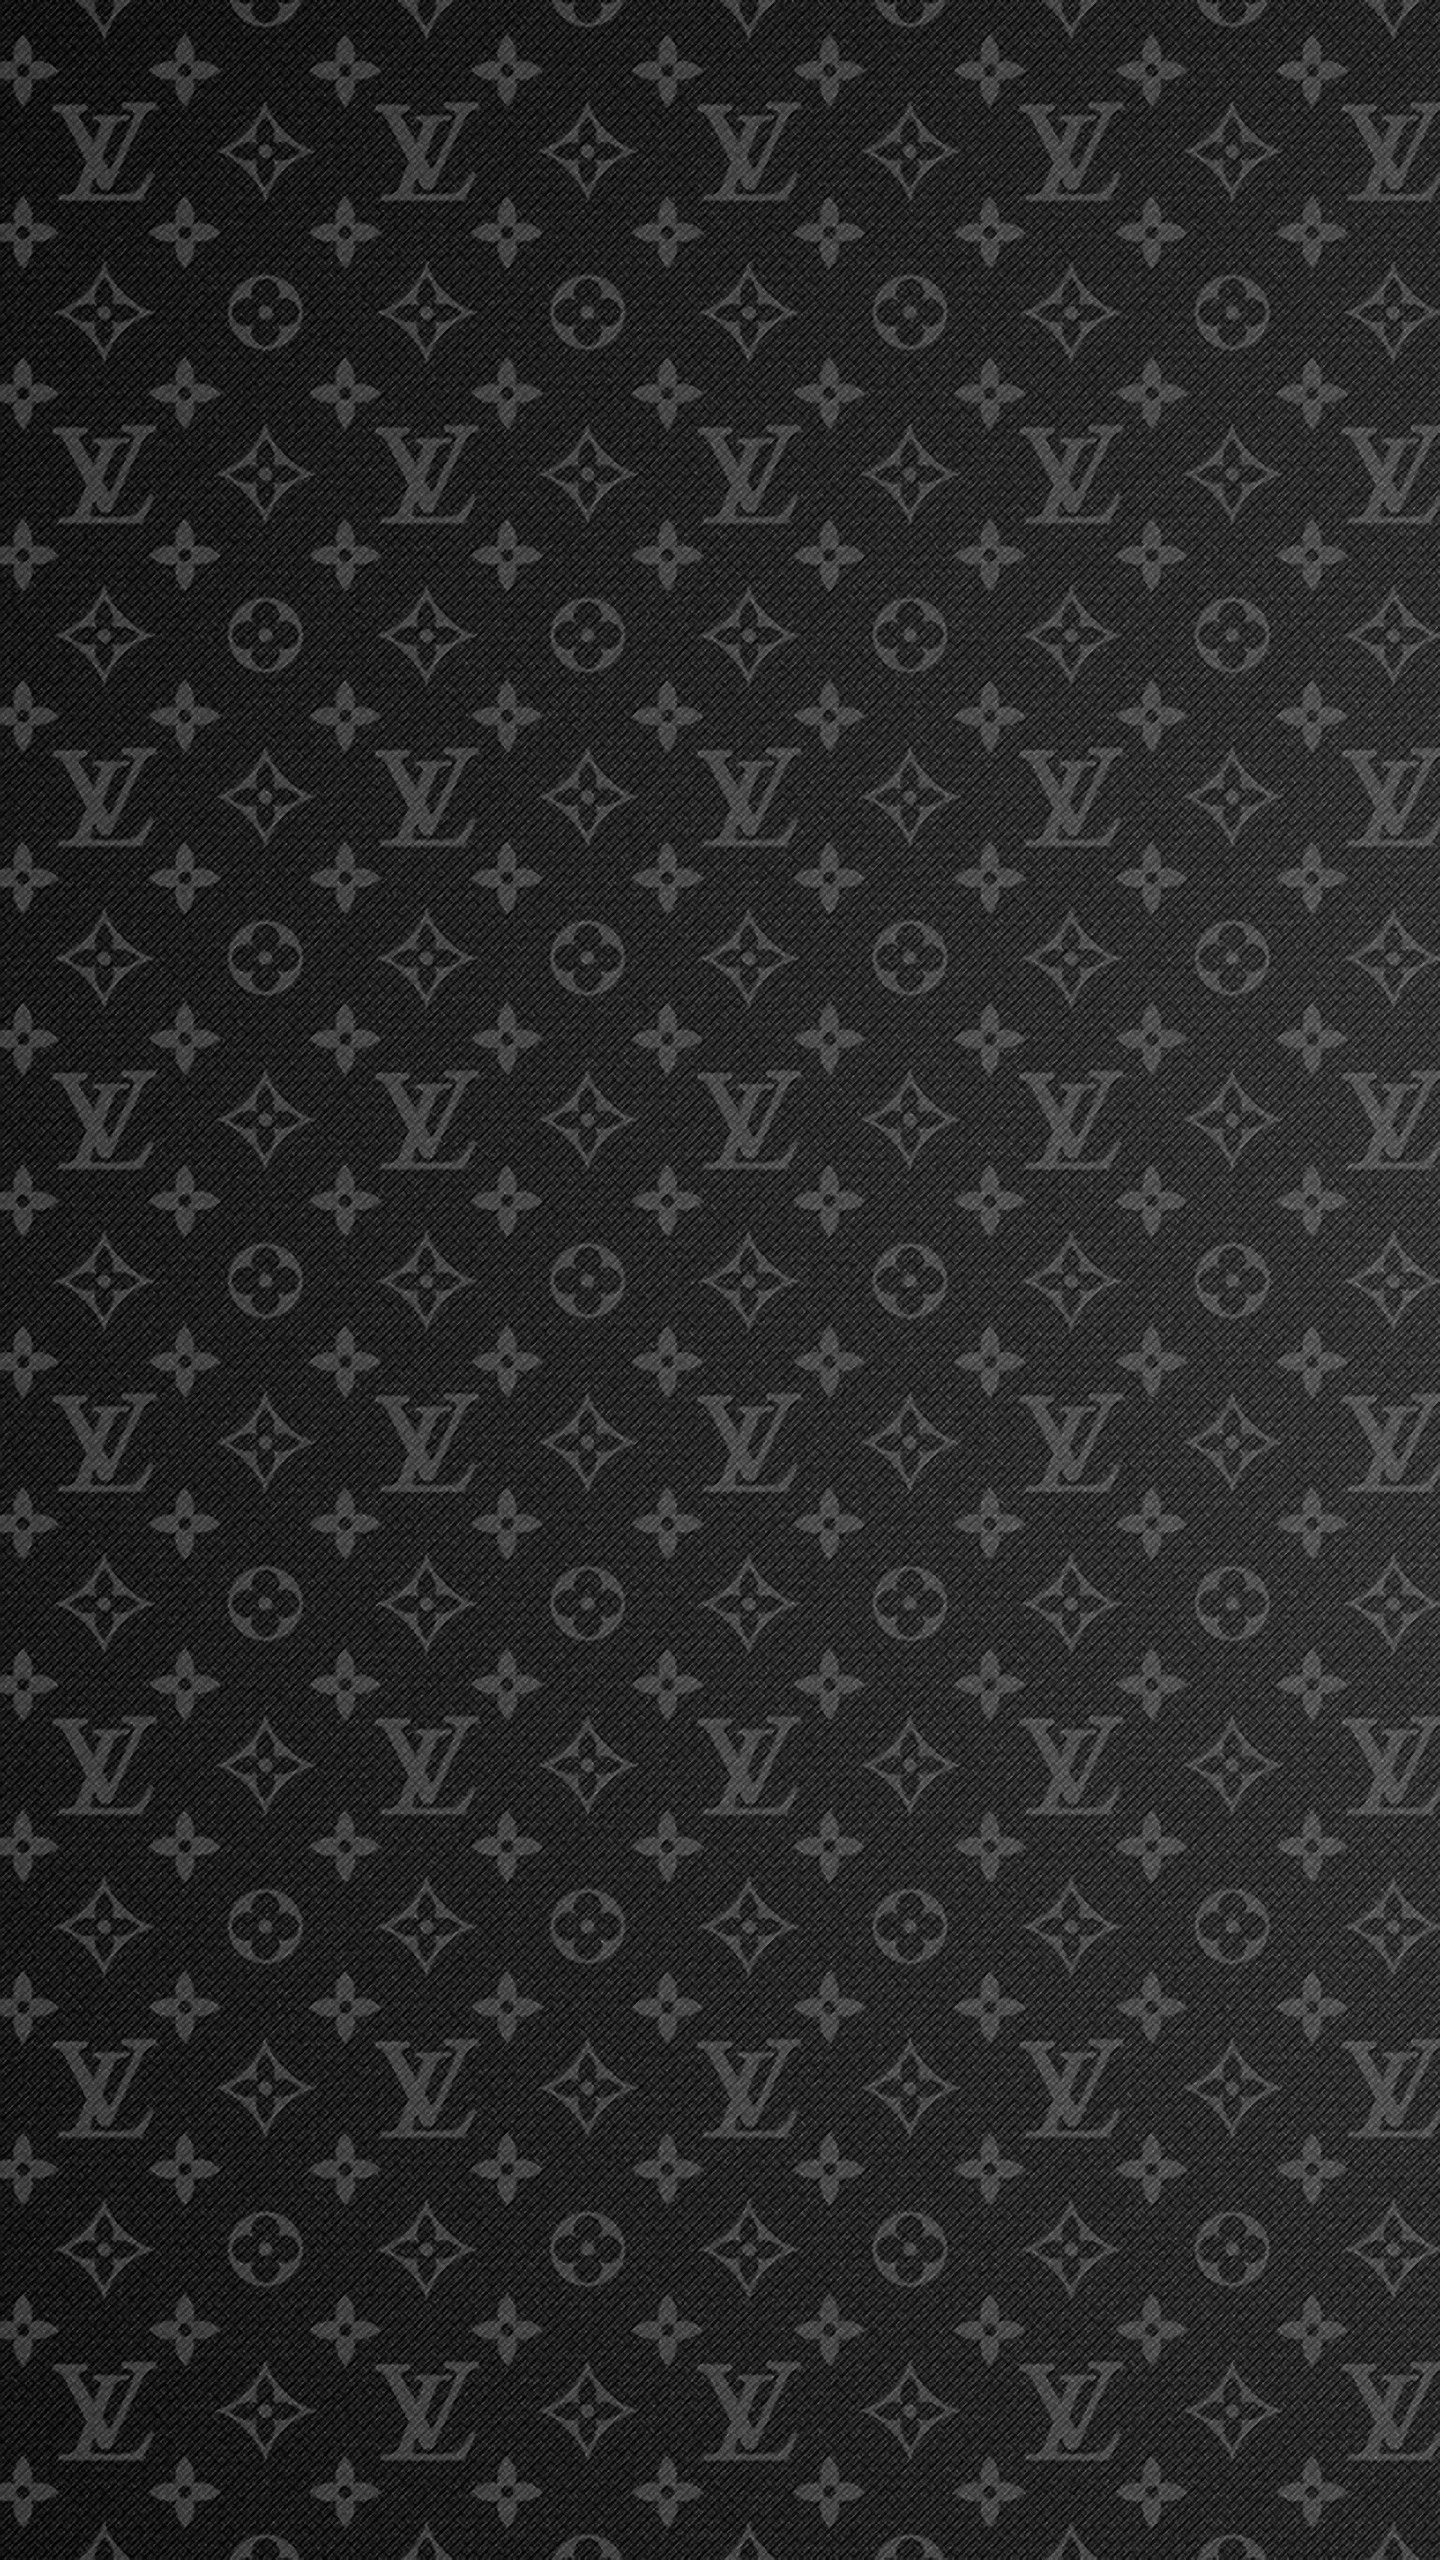 Louis Vuitton Wallpaper  Louis vuitton iphone wallpaper, Iphone